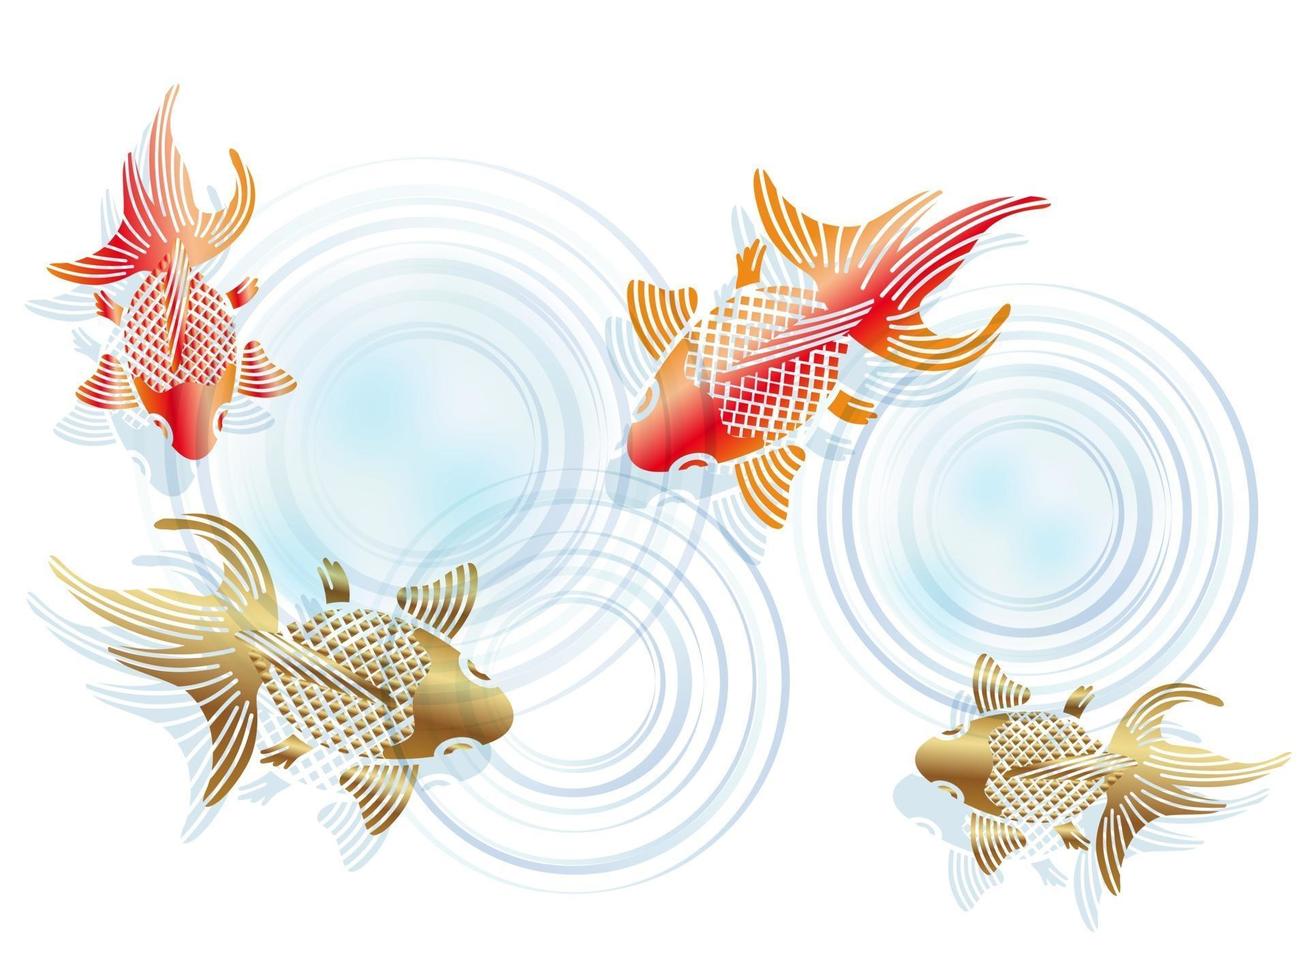 illustrazione di pesce rosso di vettore di stile vintage giapponese isolato su uno sfondo bianco.